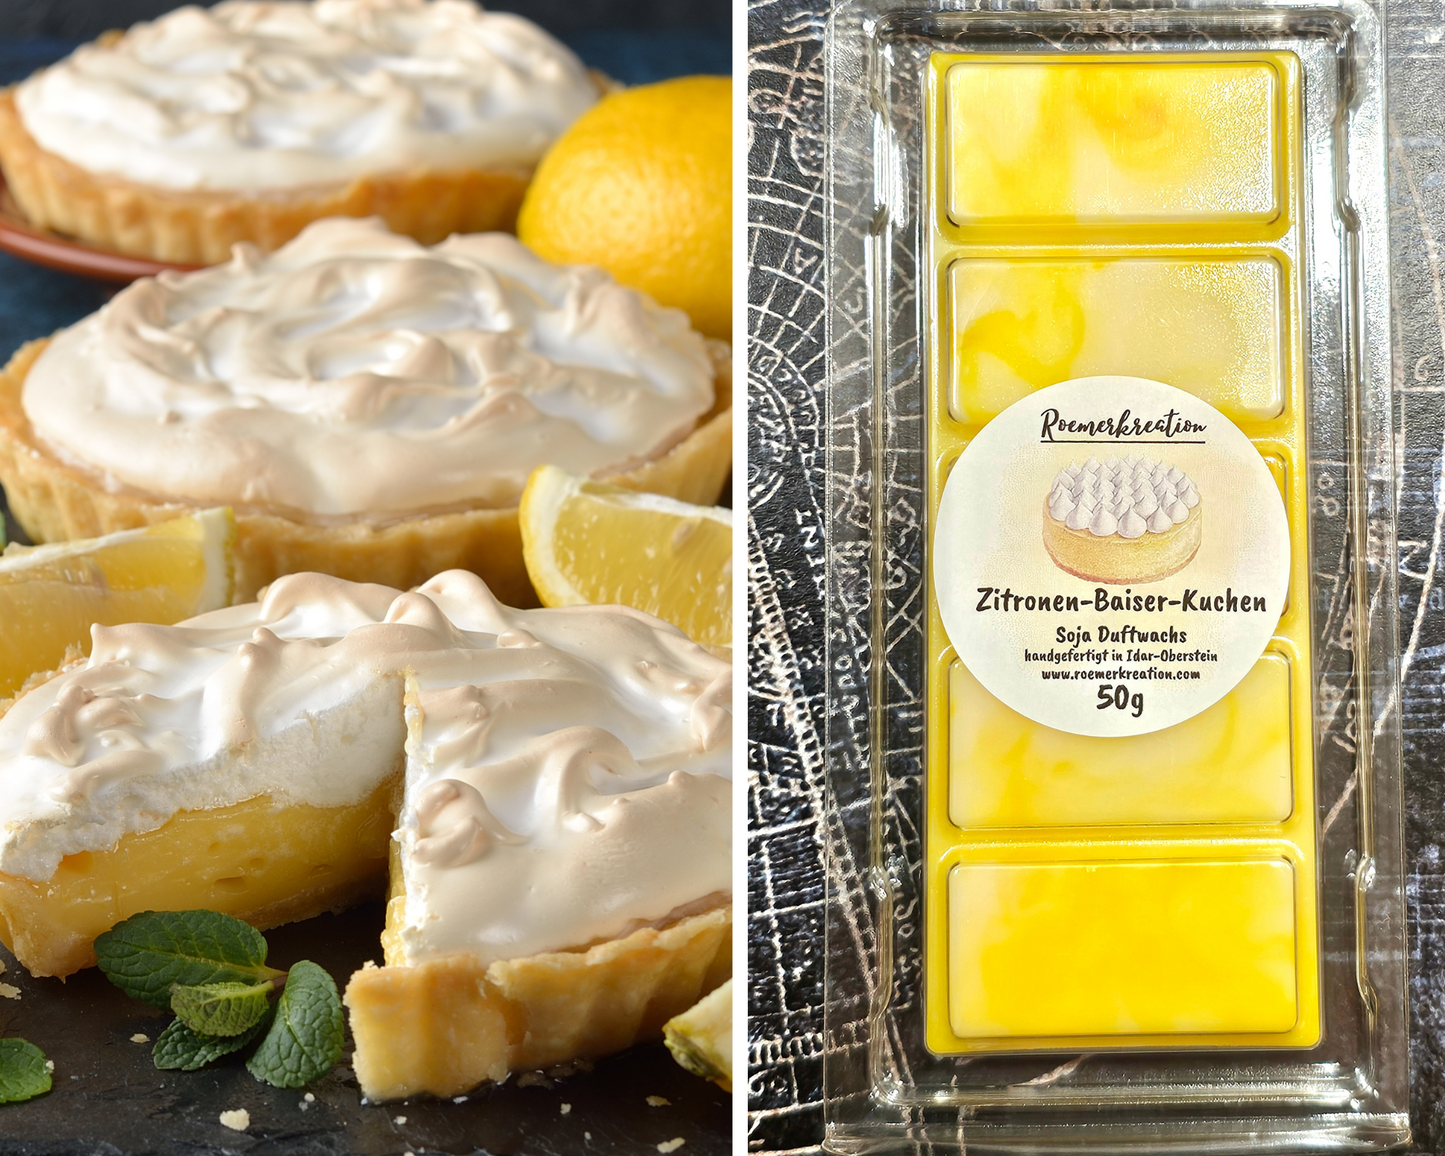 Tafel 50 g | Zitronen-Baiser-Kuchen | Duftwachs